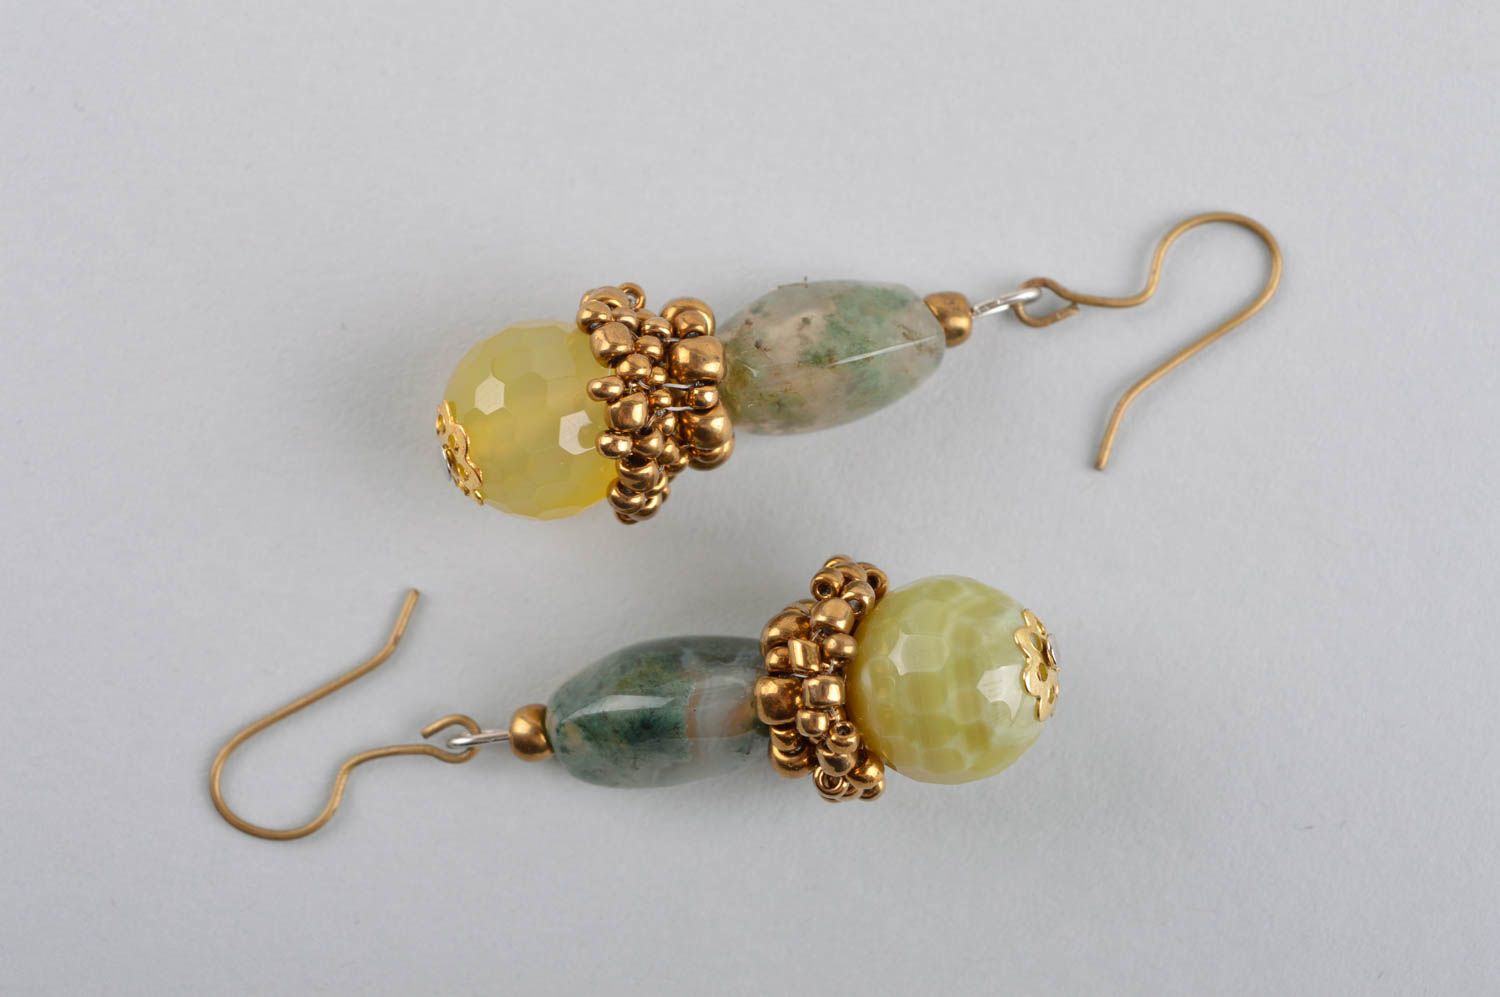 Handmade earrings stylish earrings designer jewelry women accessories gift ideas photo 5